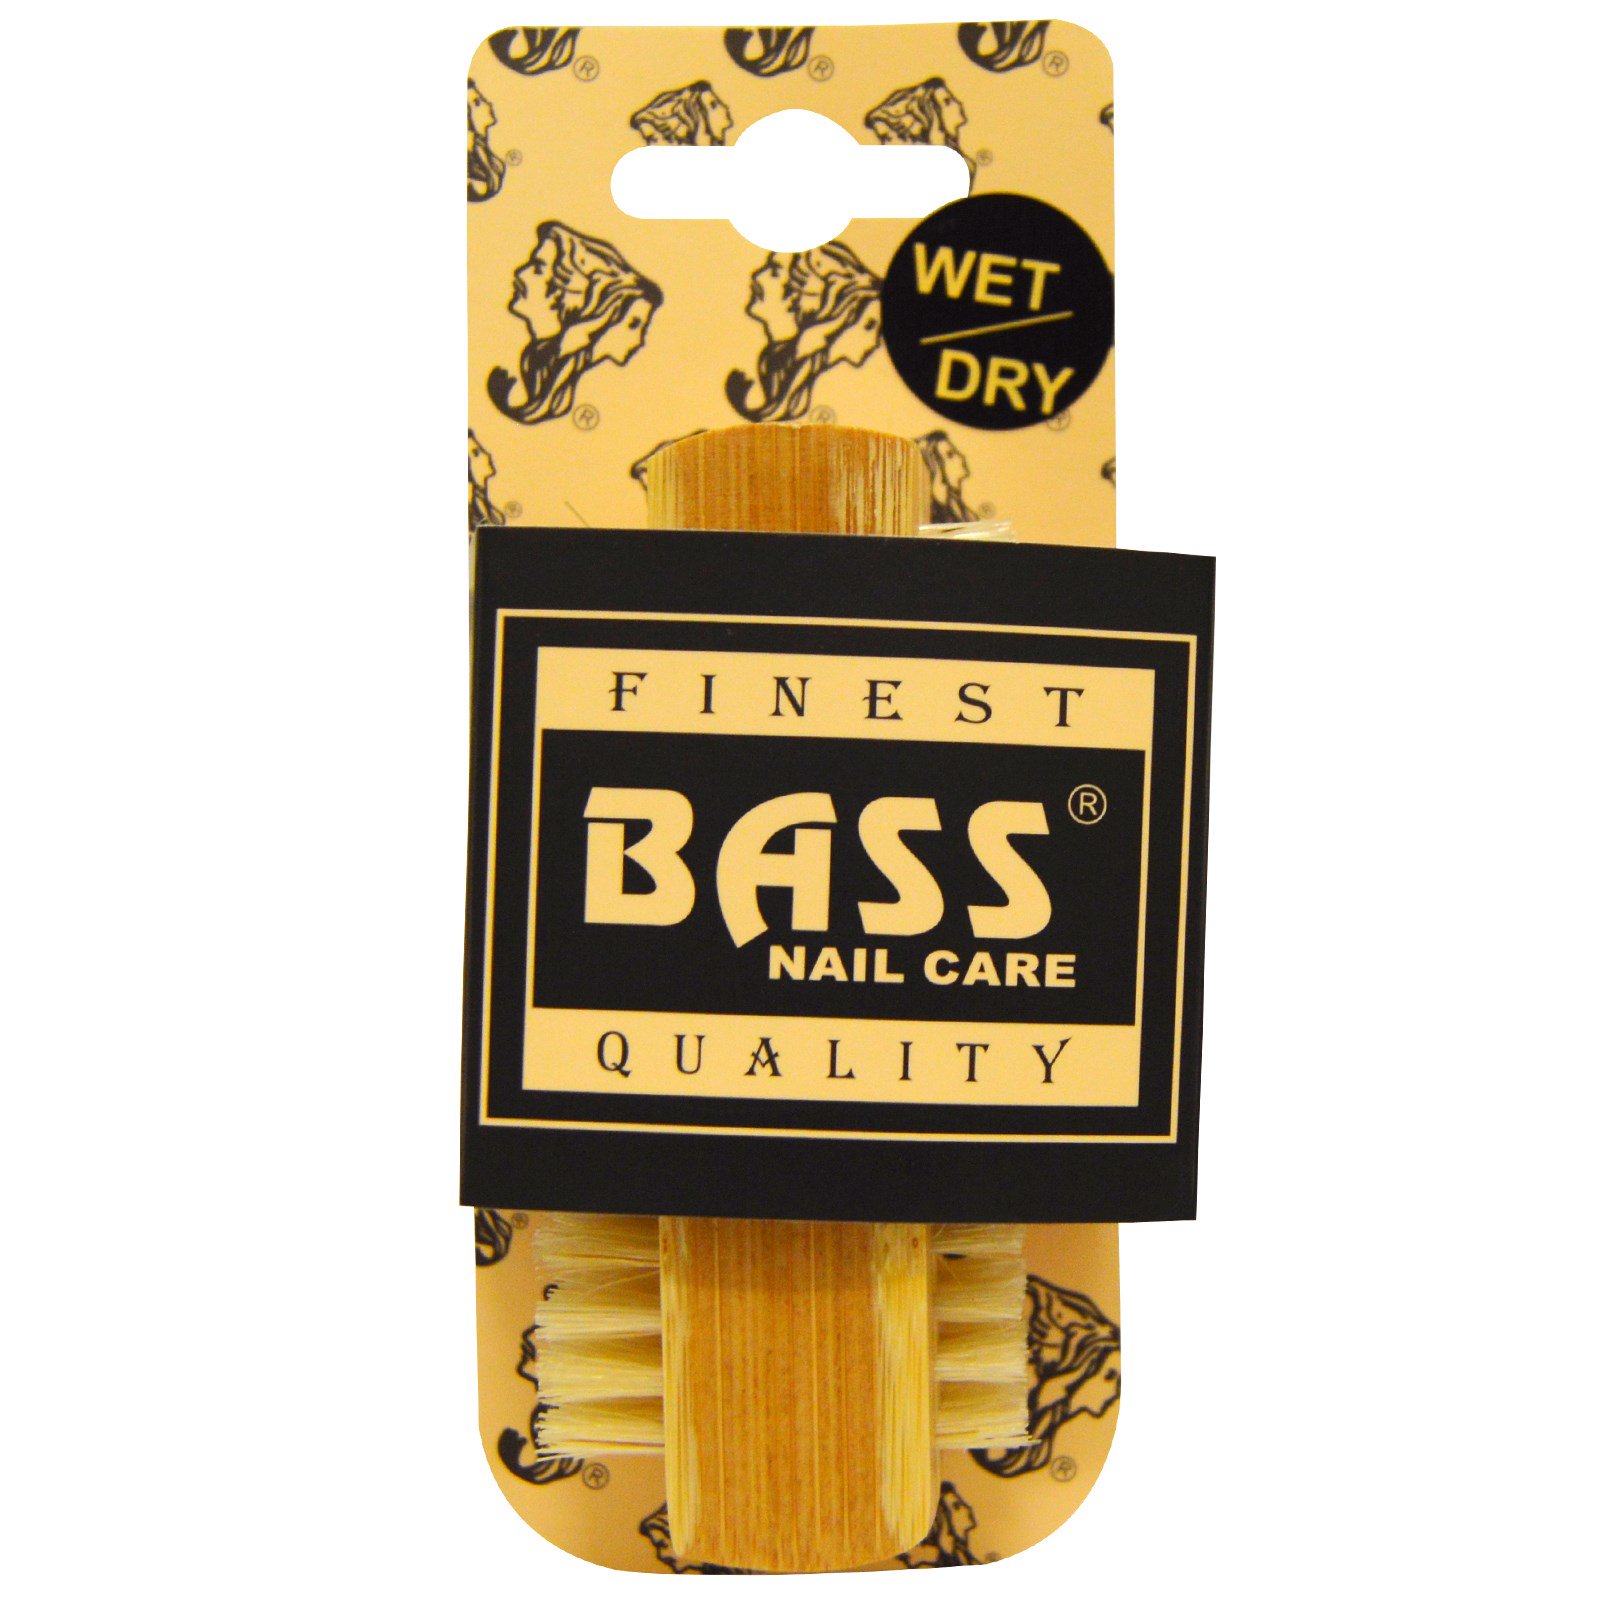 Bass Brushes, Очищающая щетка для ногтей из 100% натуральной щетины, Экстра прочная, 1 щетка (Discontinued Item)